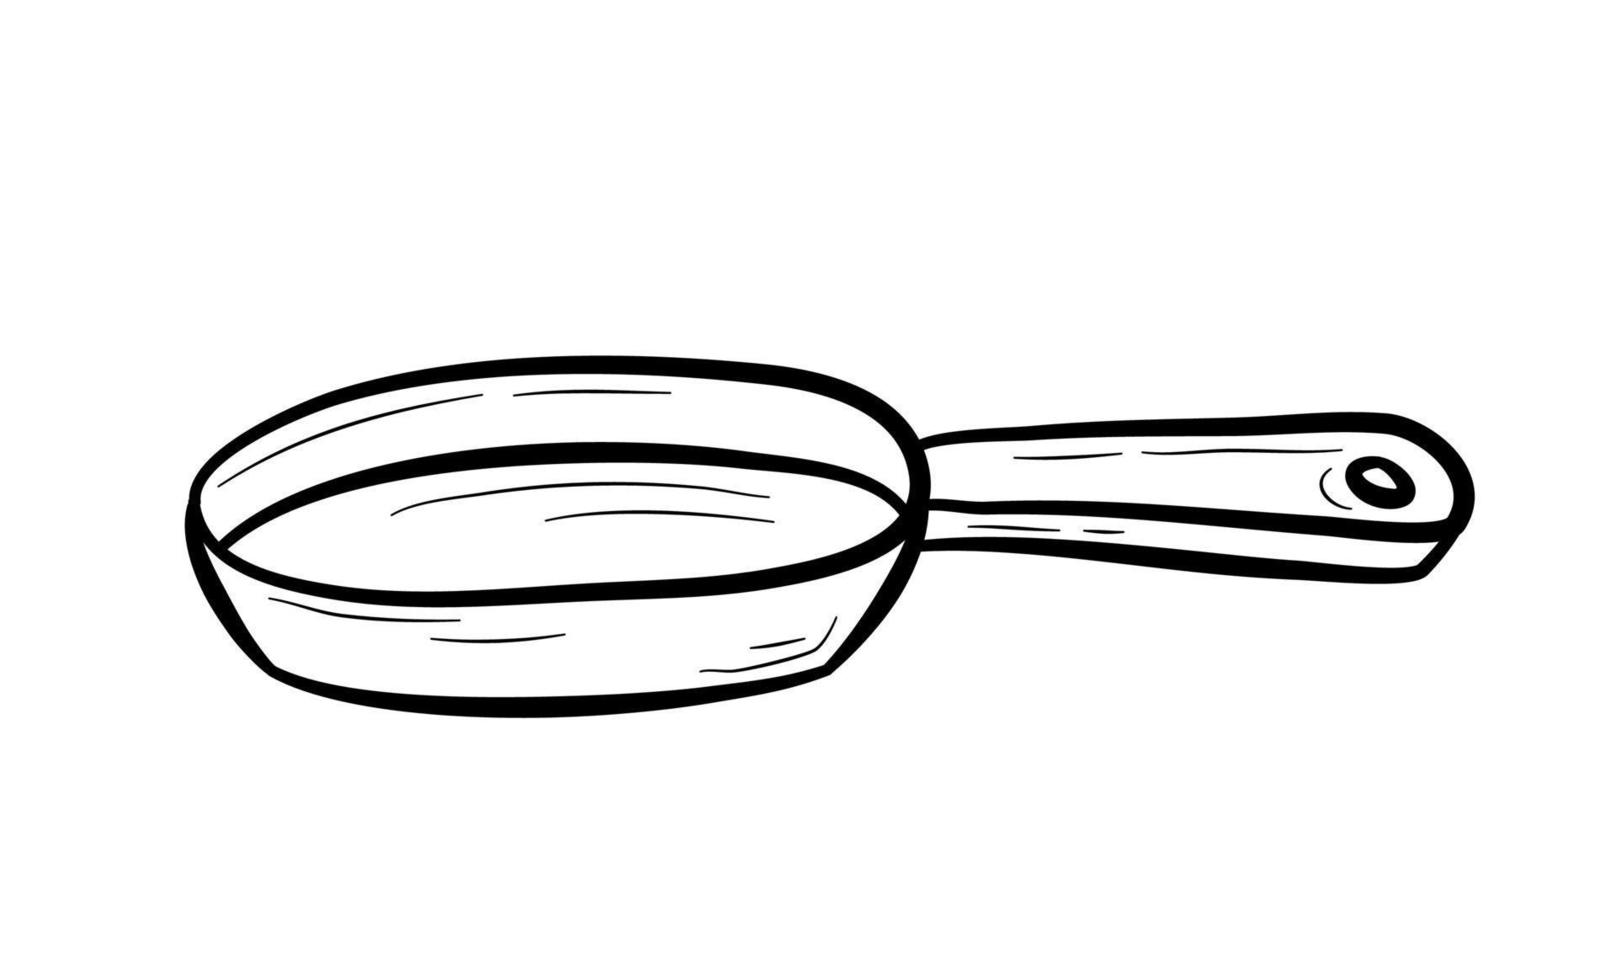 frigideira desenhada à mão. talheres, utensílio de cozinha para cozinhar alimentos. ilustração vetorial plana em estilo doodle. vetor